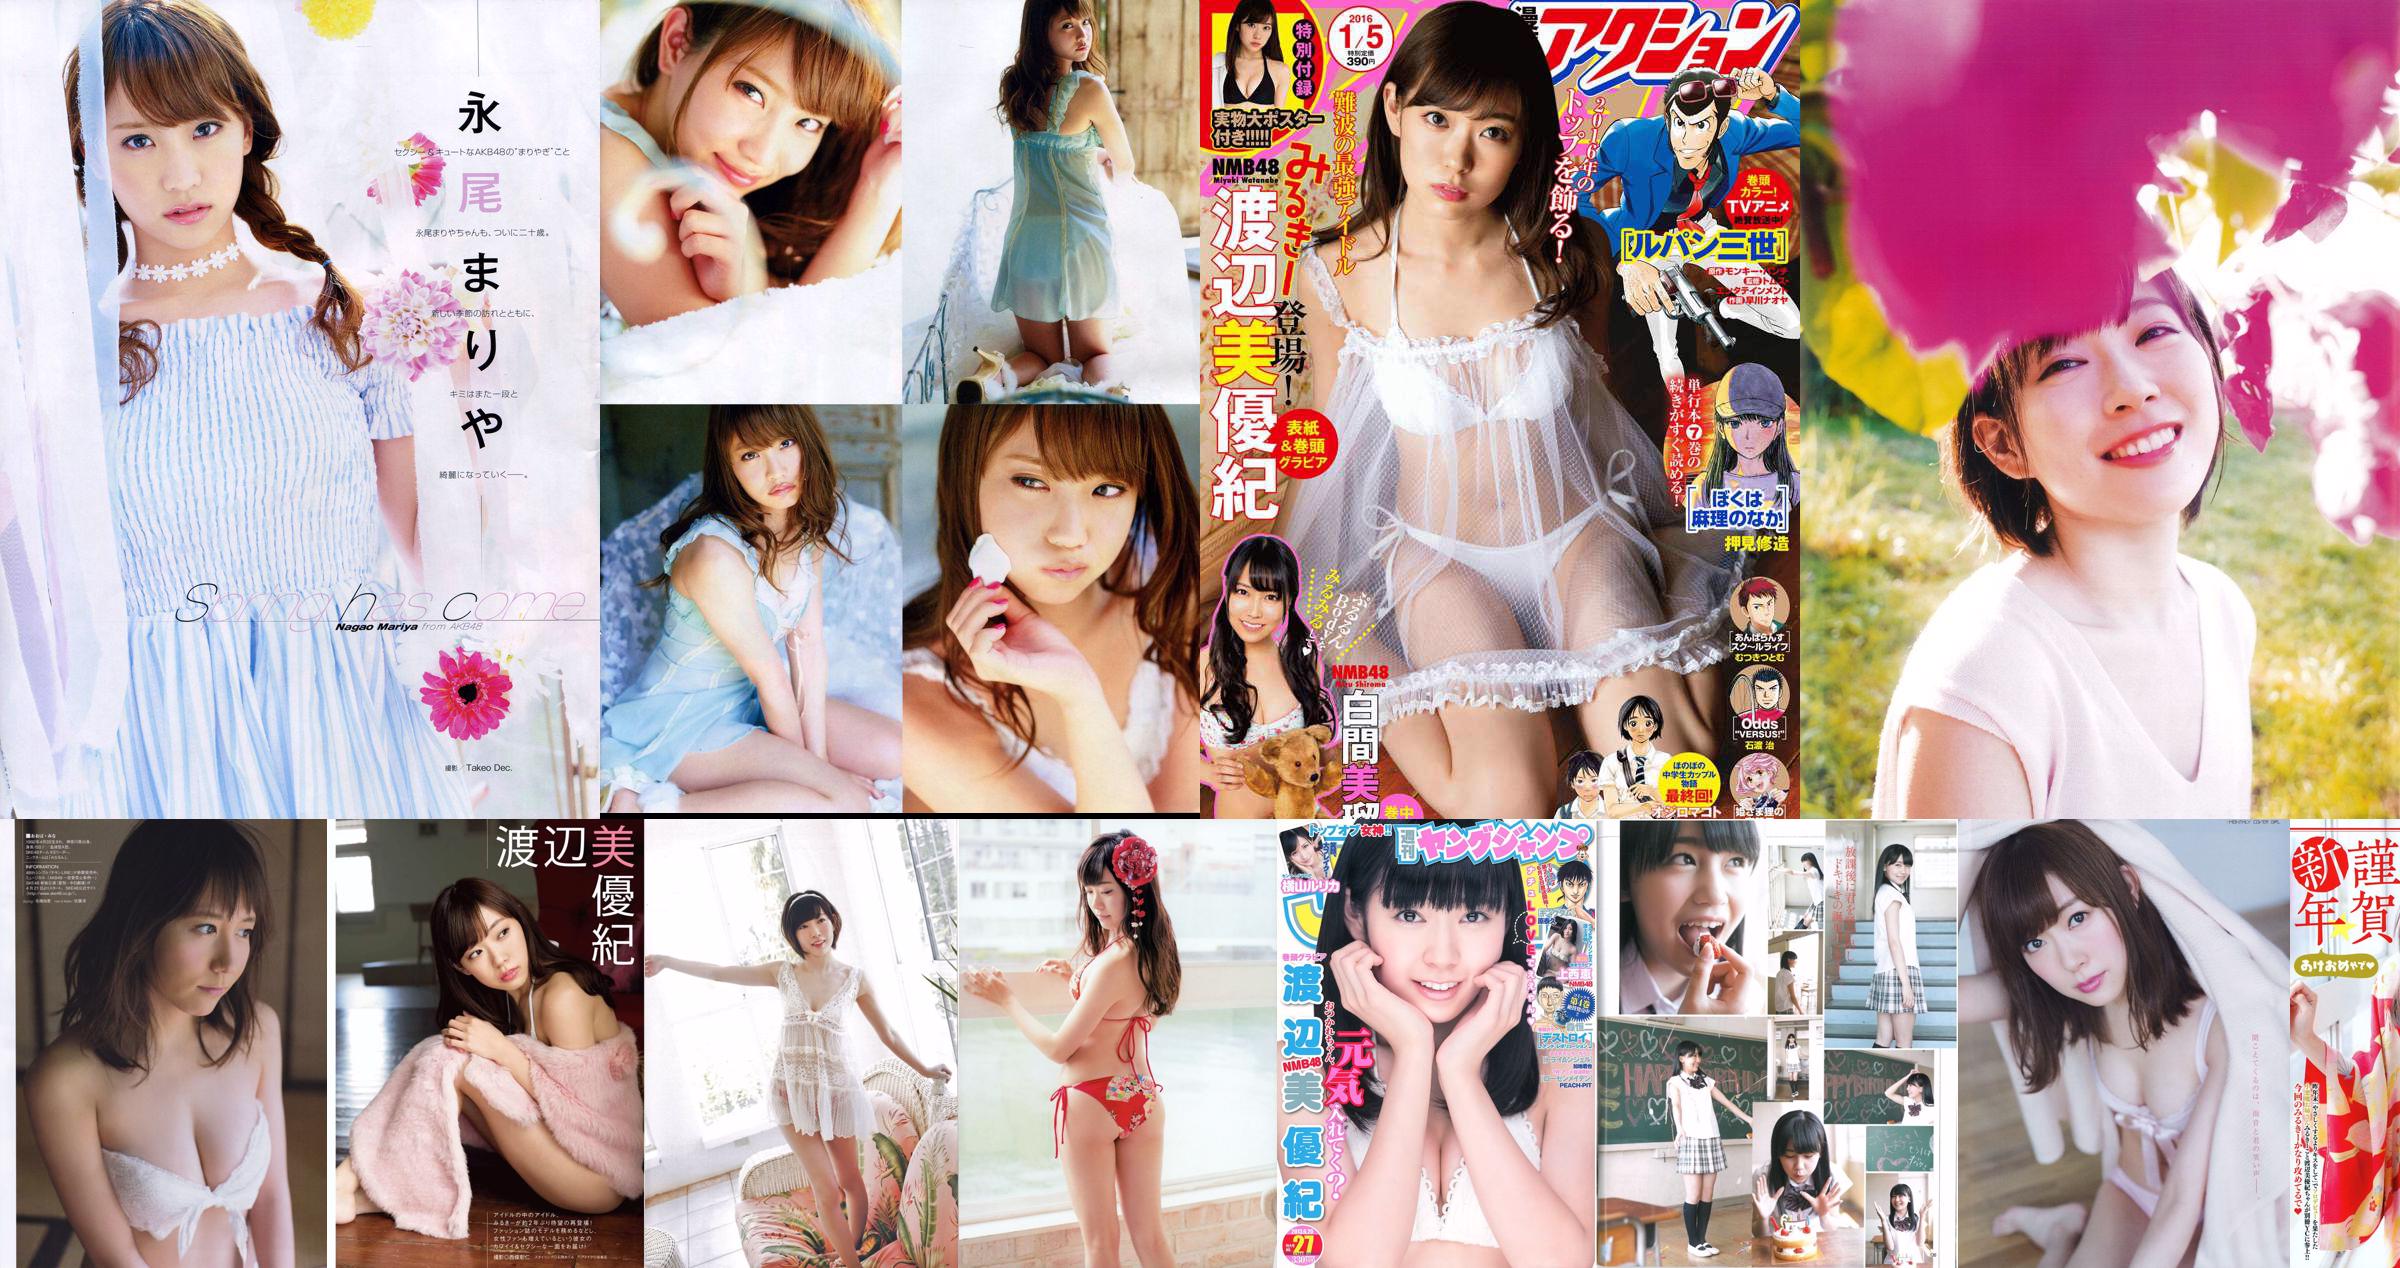 [Wöchentliche große Comic-Geister] Miyuki Watanabe 2015 No.37-38 Photo Magazine No.599cad Seite 1